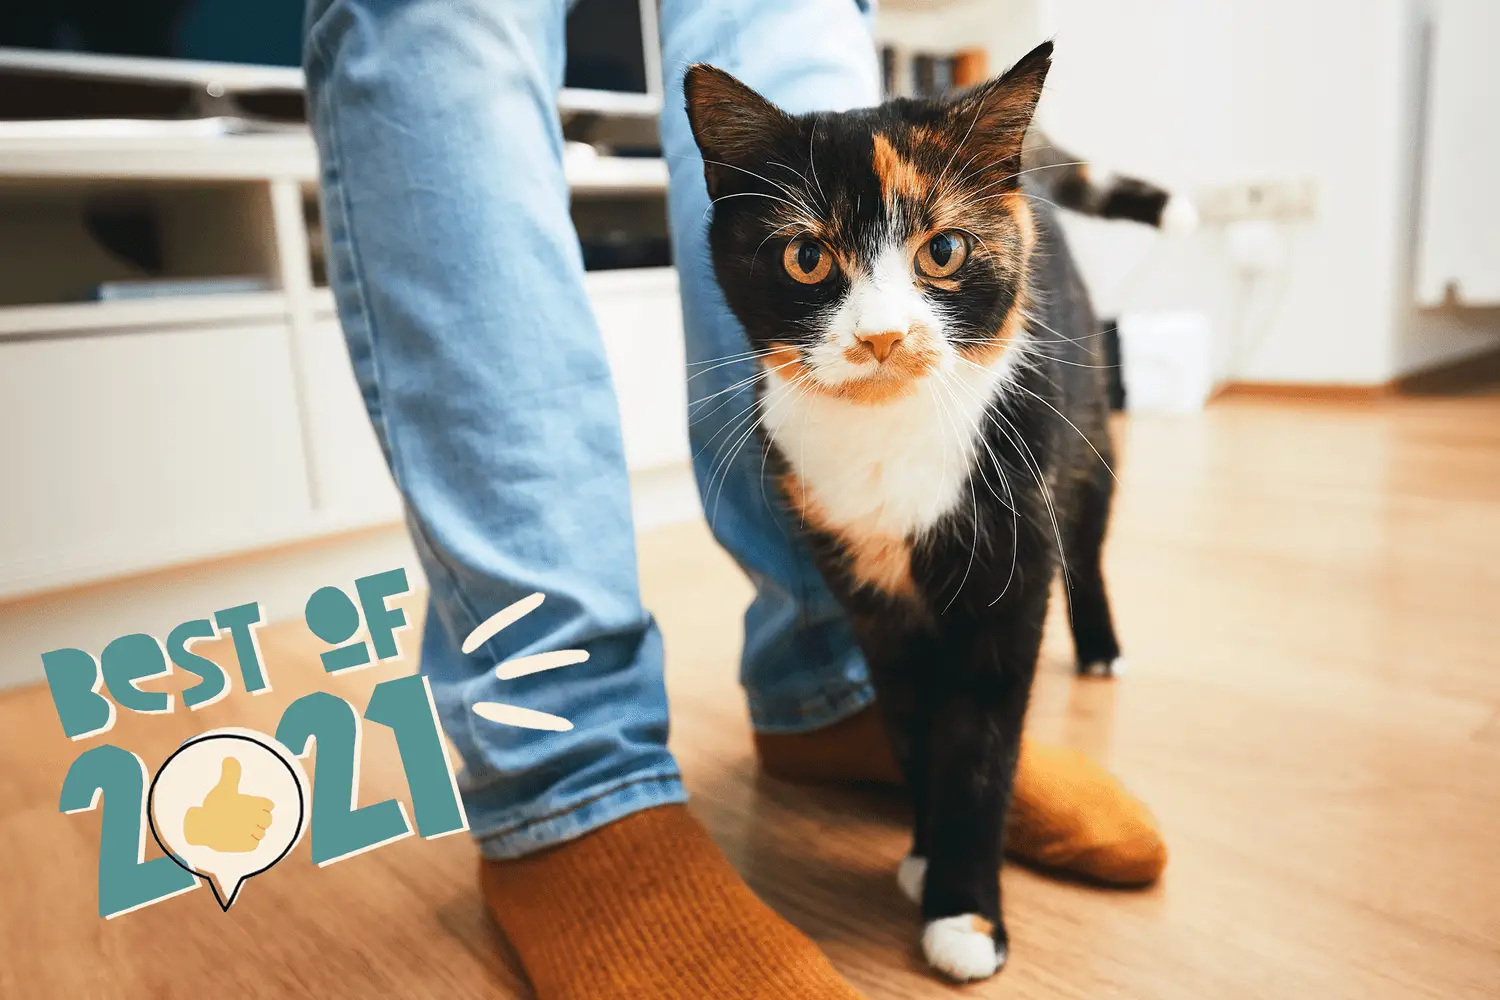 Katze reibt sich am Bein einer Person – die besten Katzennamen 2021